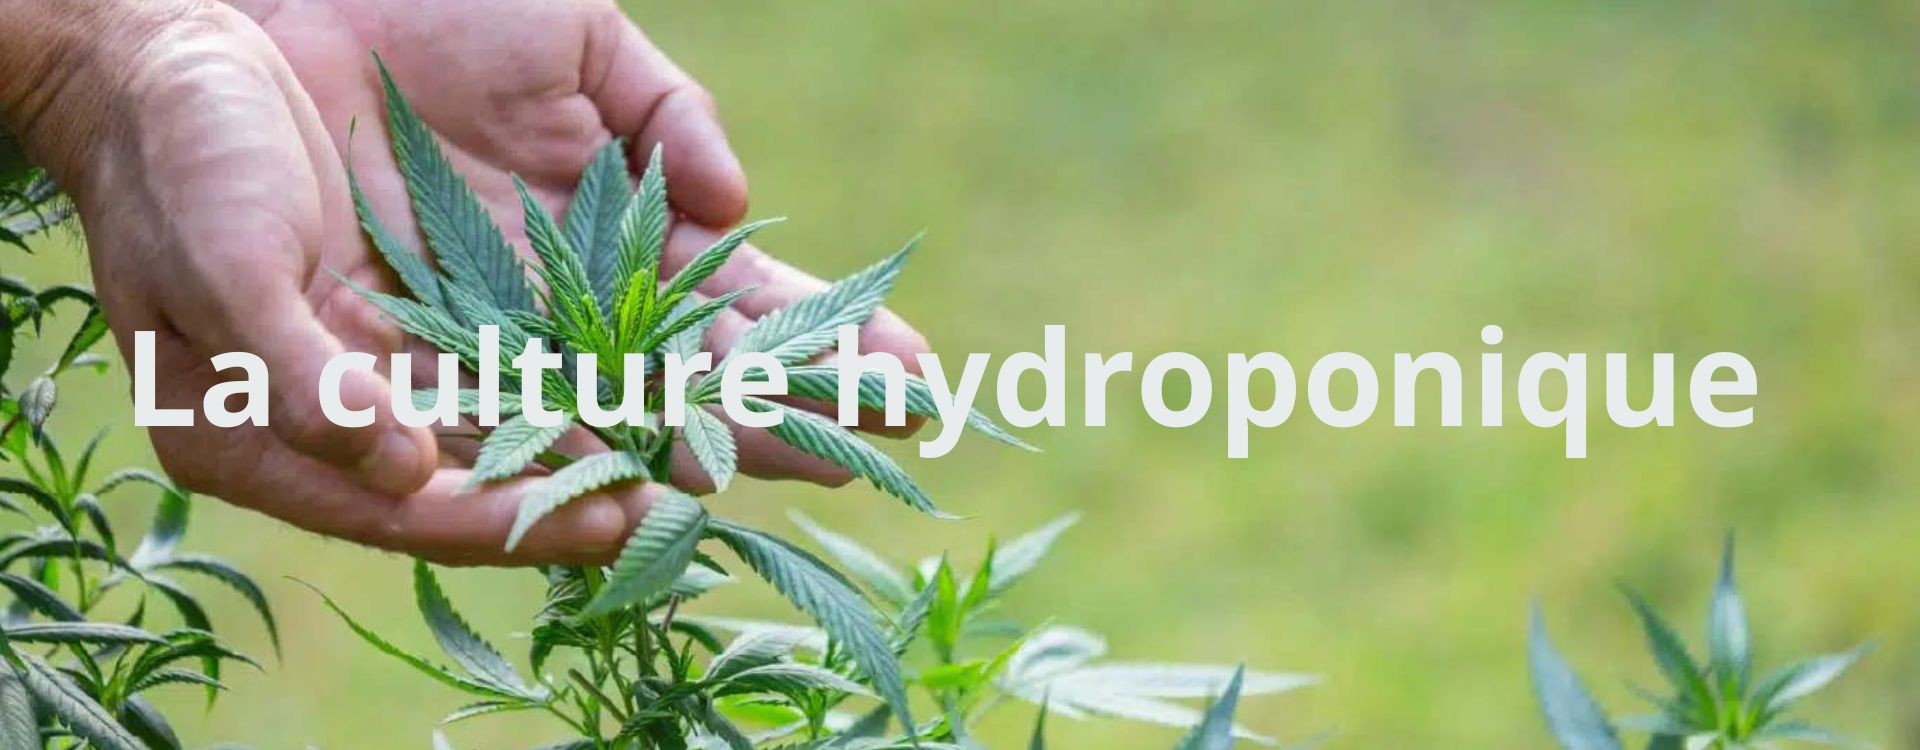 Culture De Cannabis Hydroponique.système De Culture Hydroponique